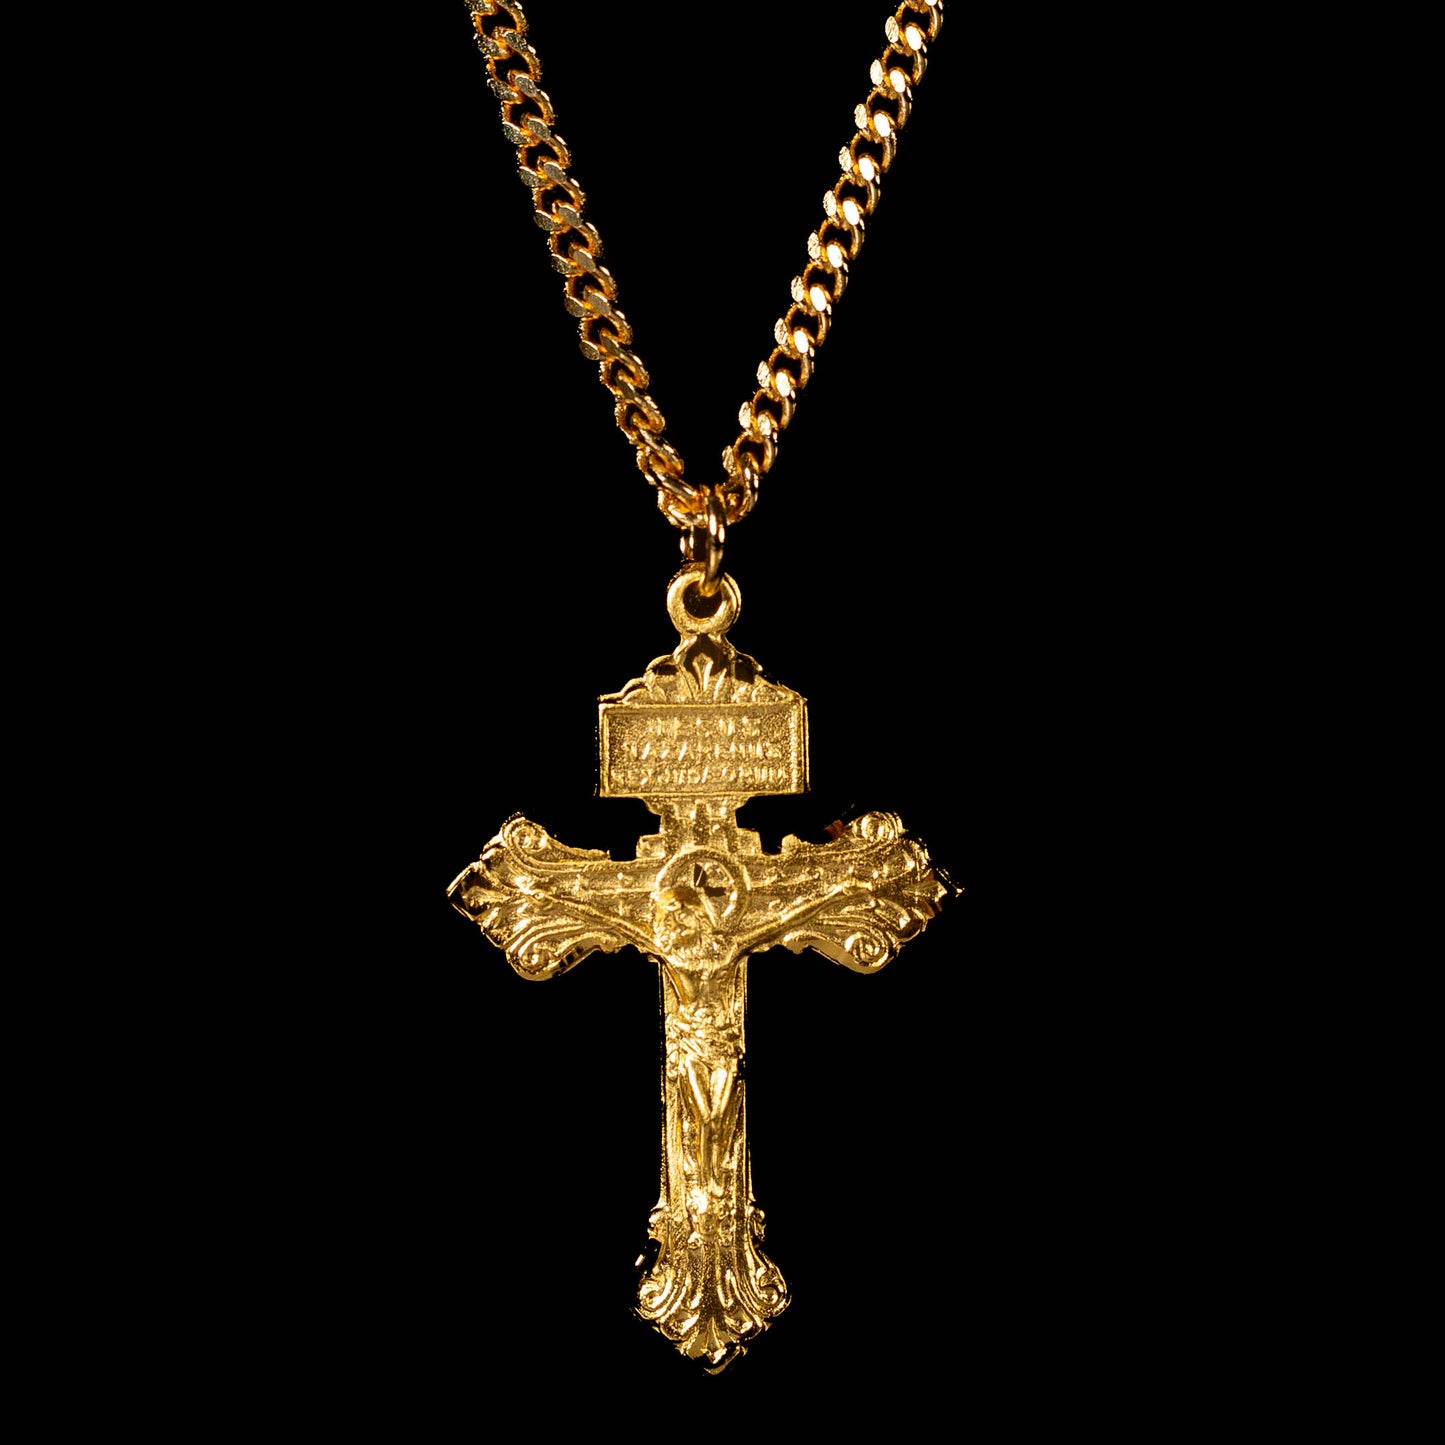 Pardon Crucifix Necklace